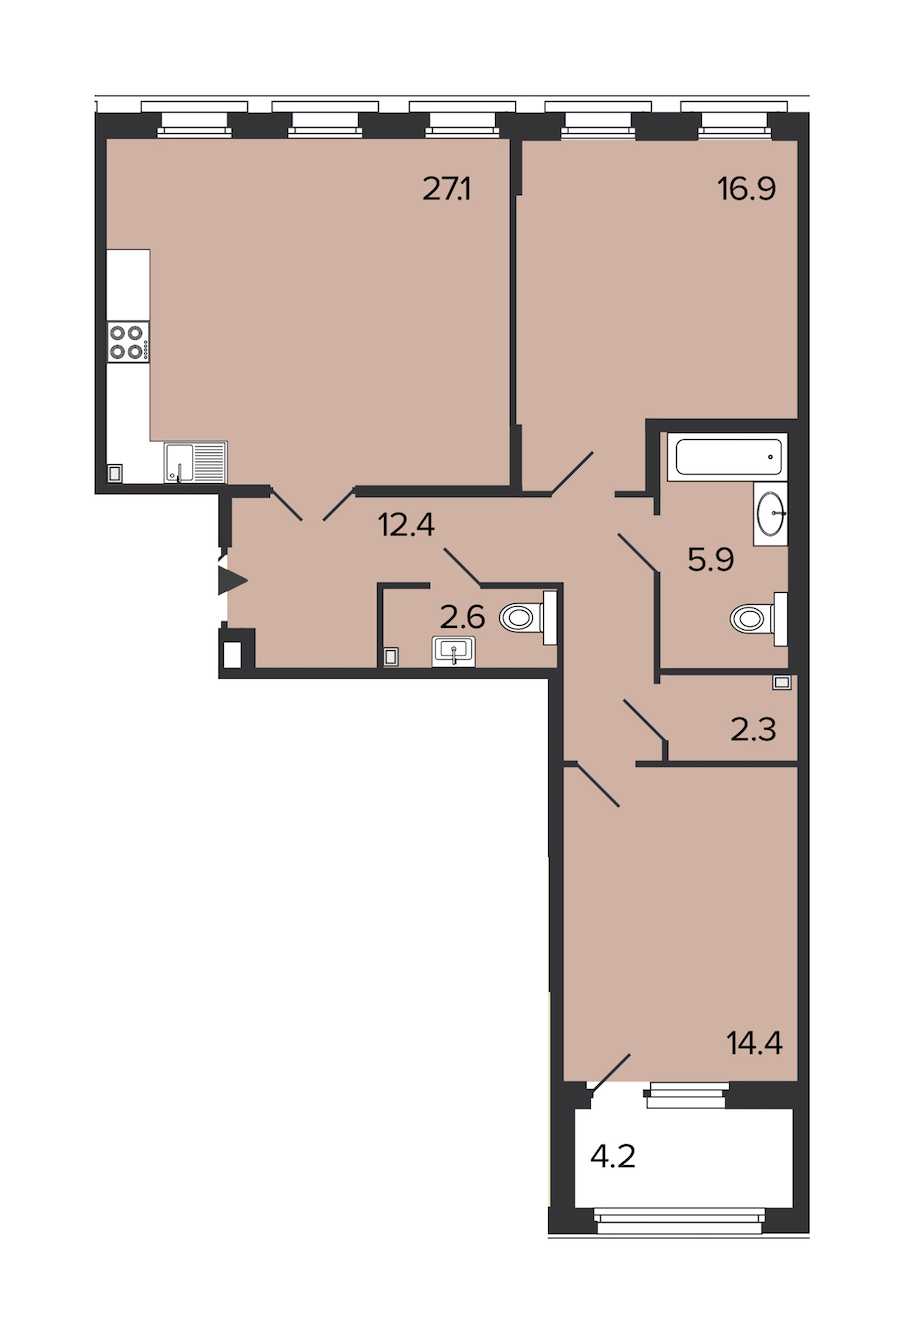 Двухкомнатная квартира в : площадь 81.6 м2 , этаж: 3 – купить в Санкт-Петербурге